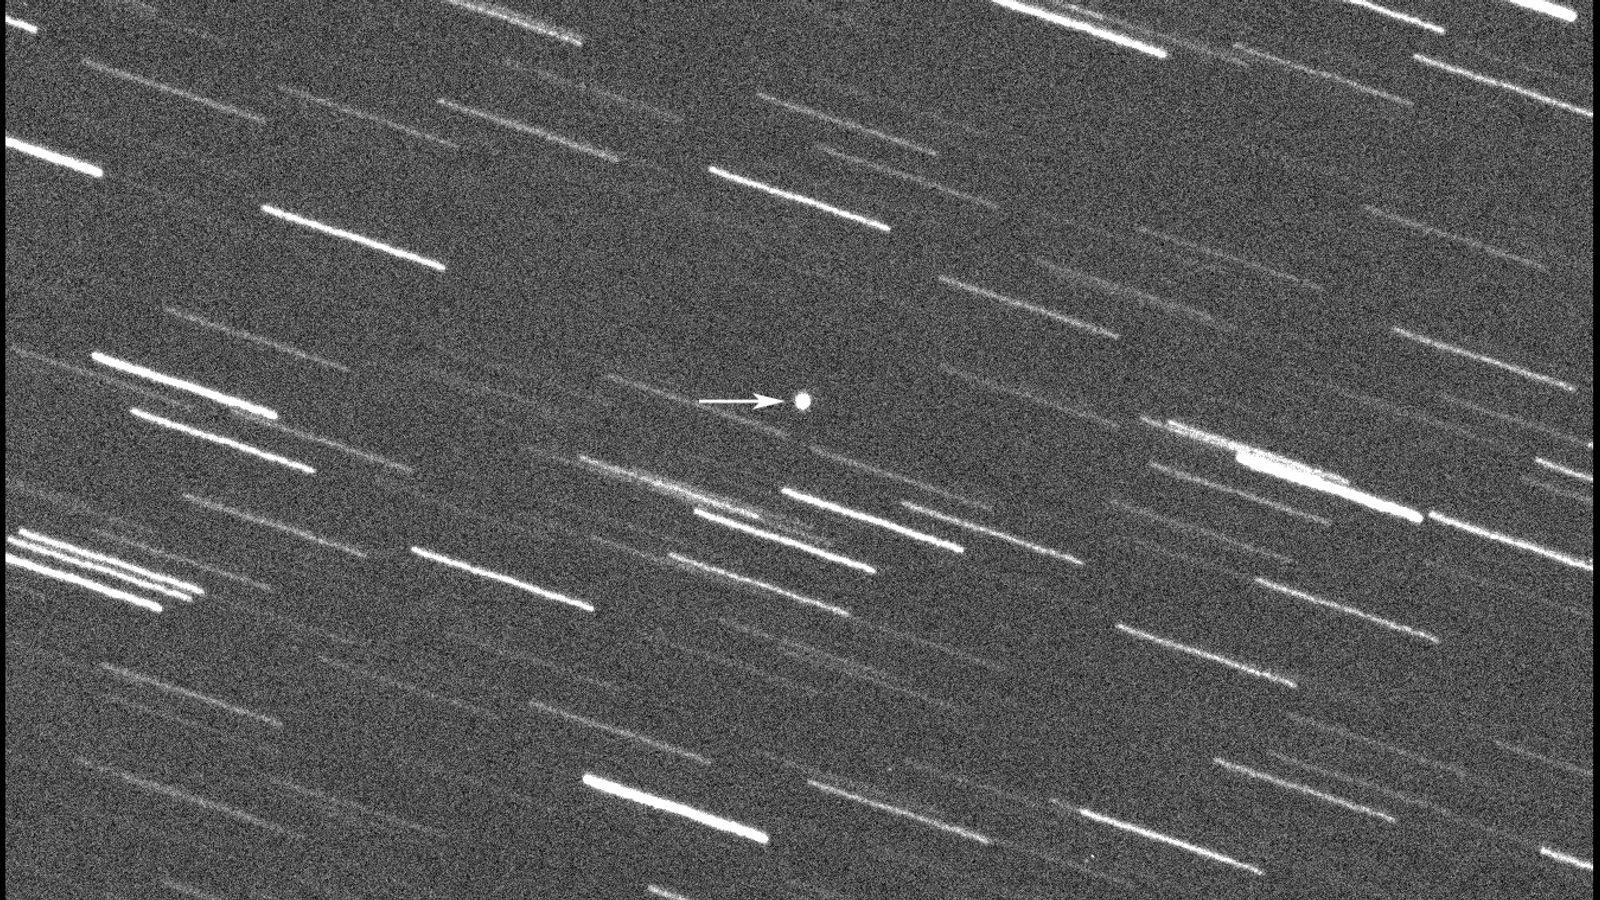 Šiandien netoli Žemės pralėkė dangoraižio dydžio asteroidas  Mokslo ir technologijų naujienos